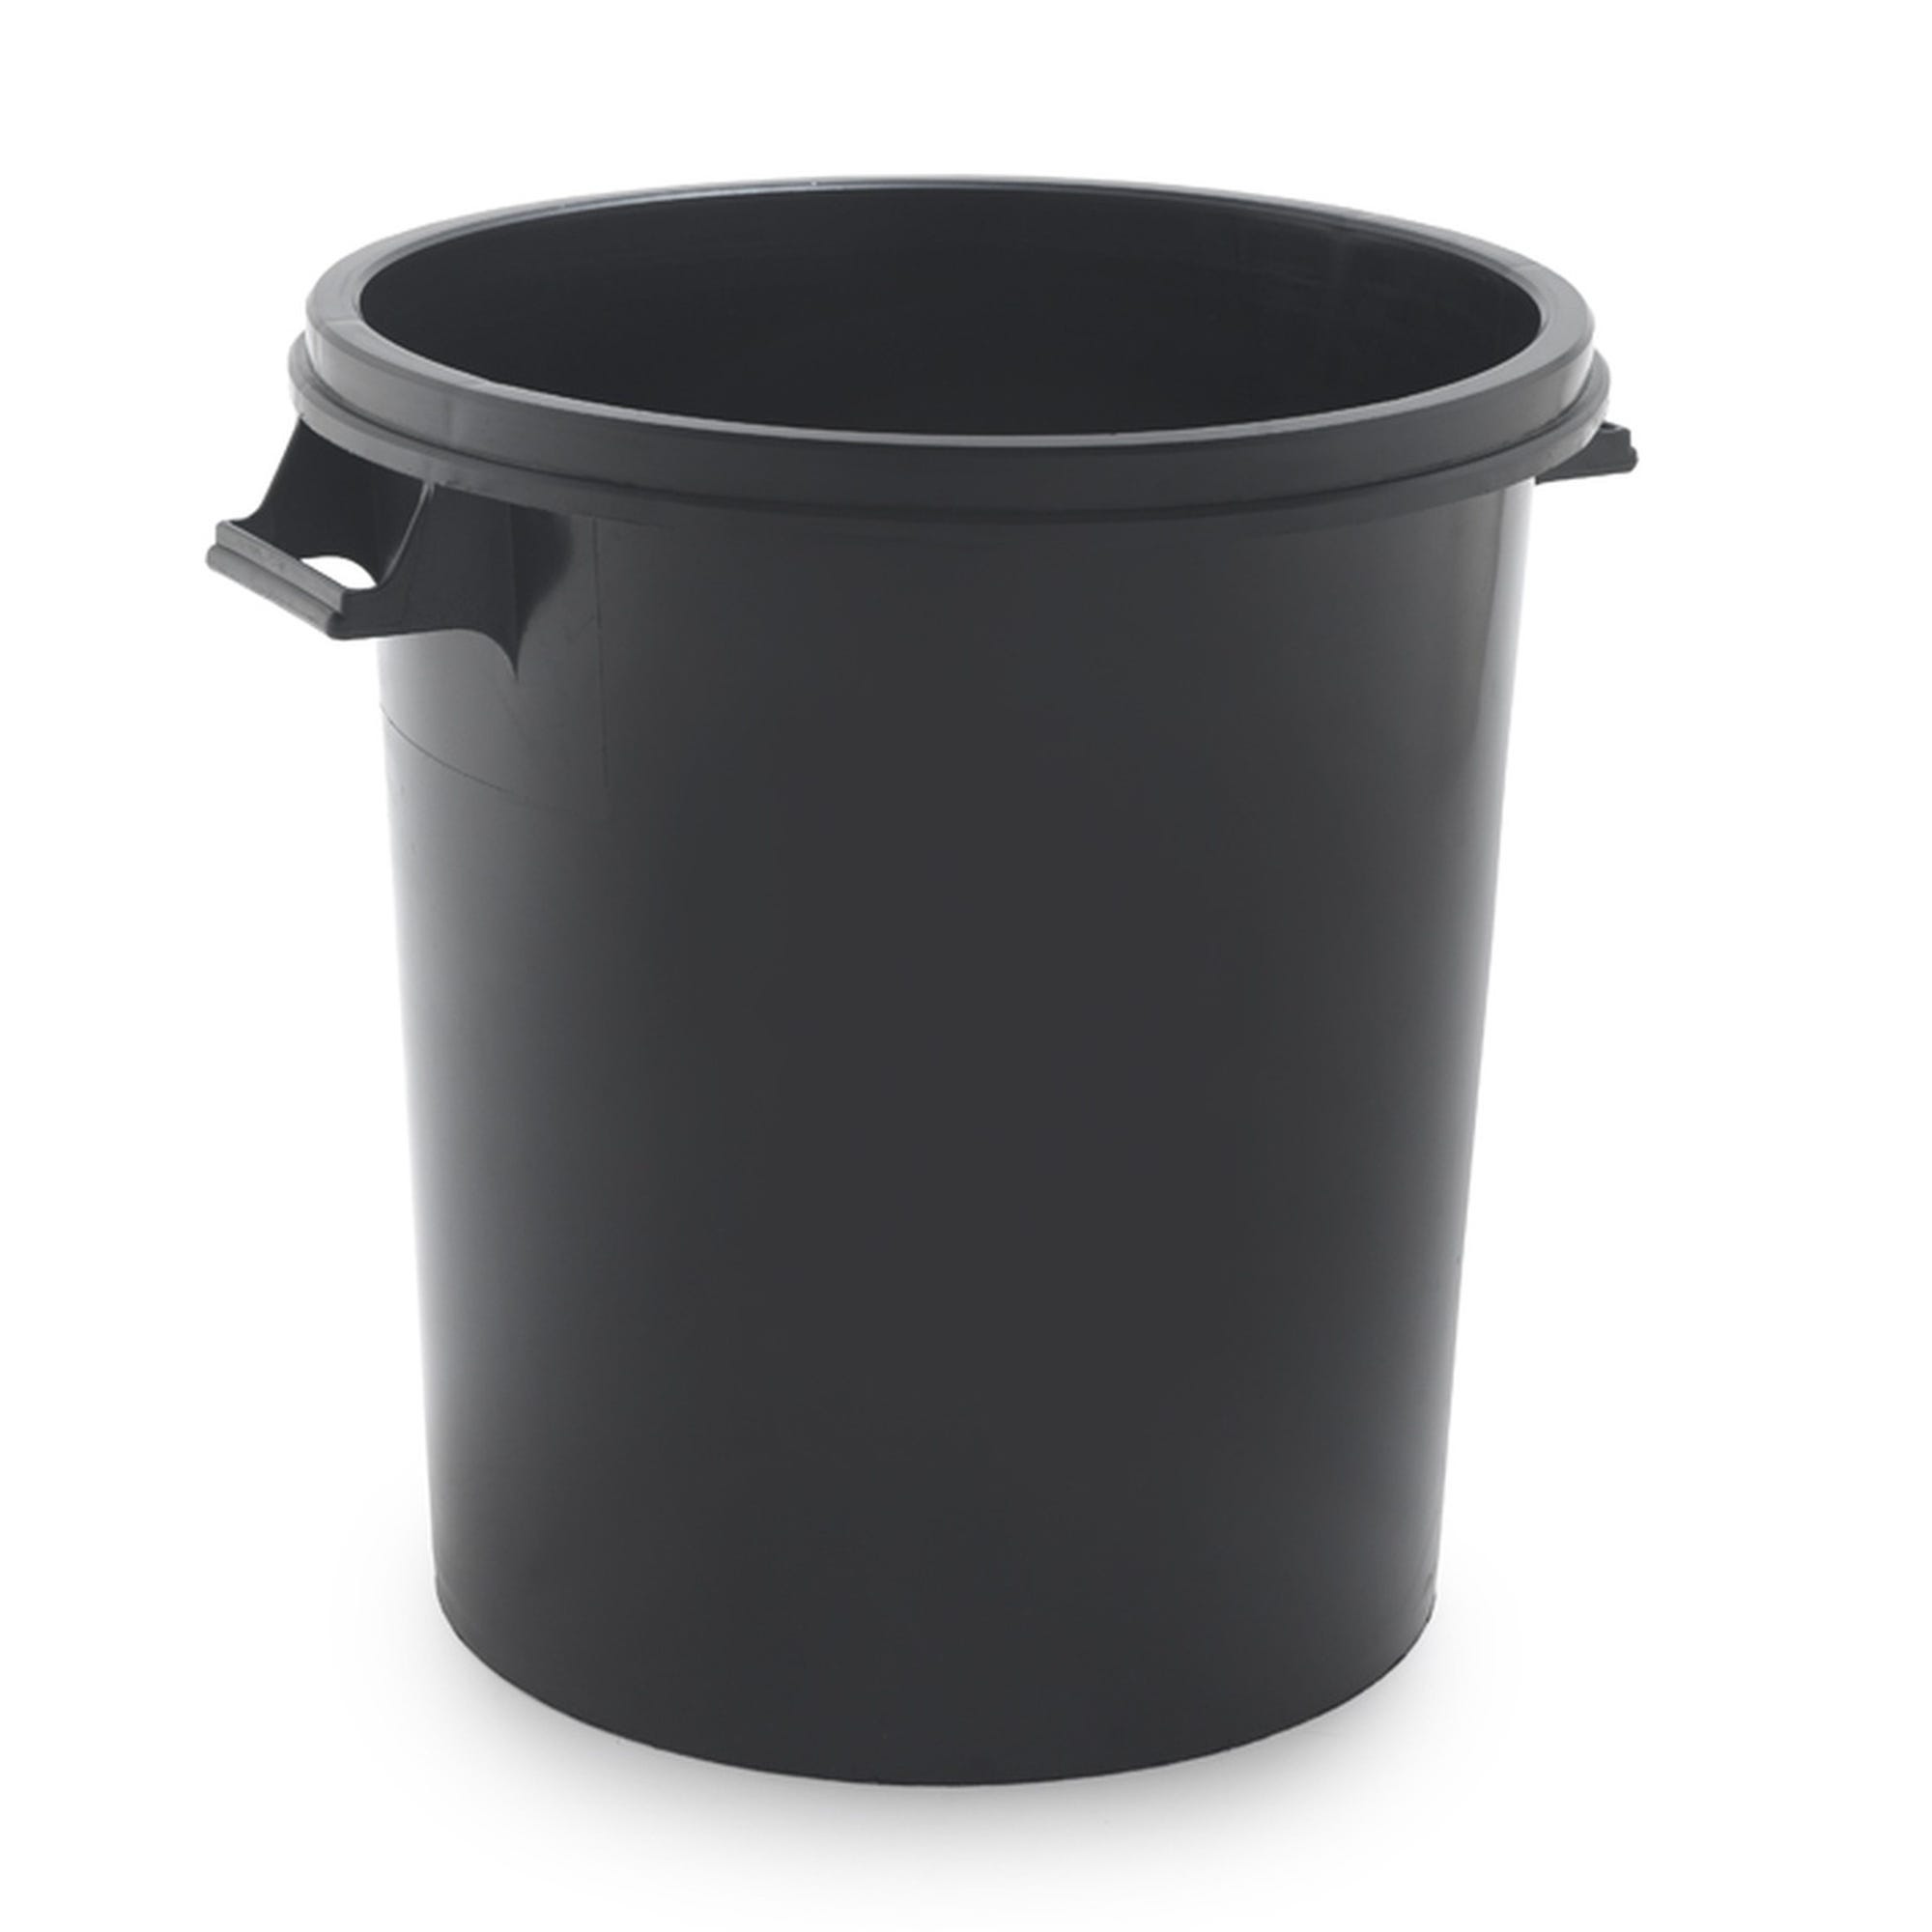 Cubo de basura 50 litros color negro sin tapa sp berner